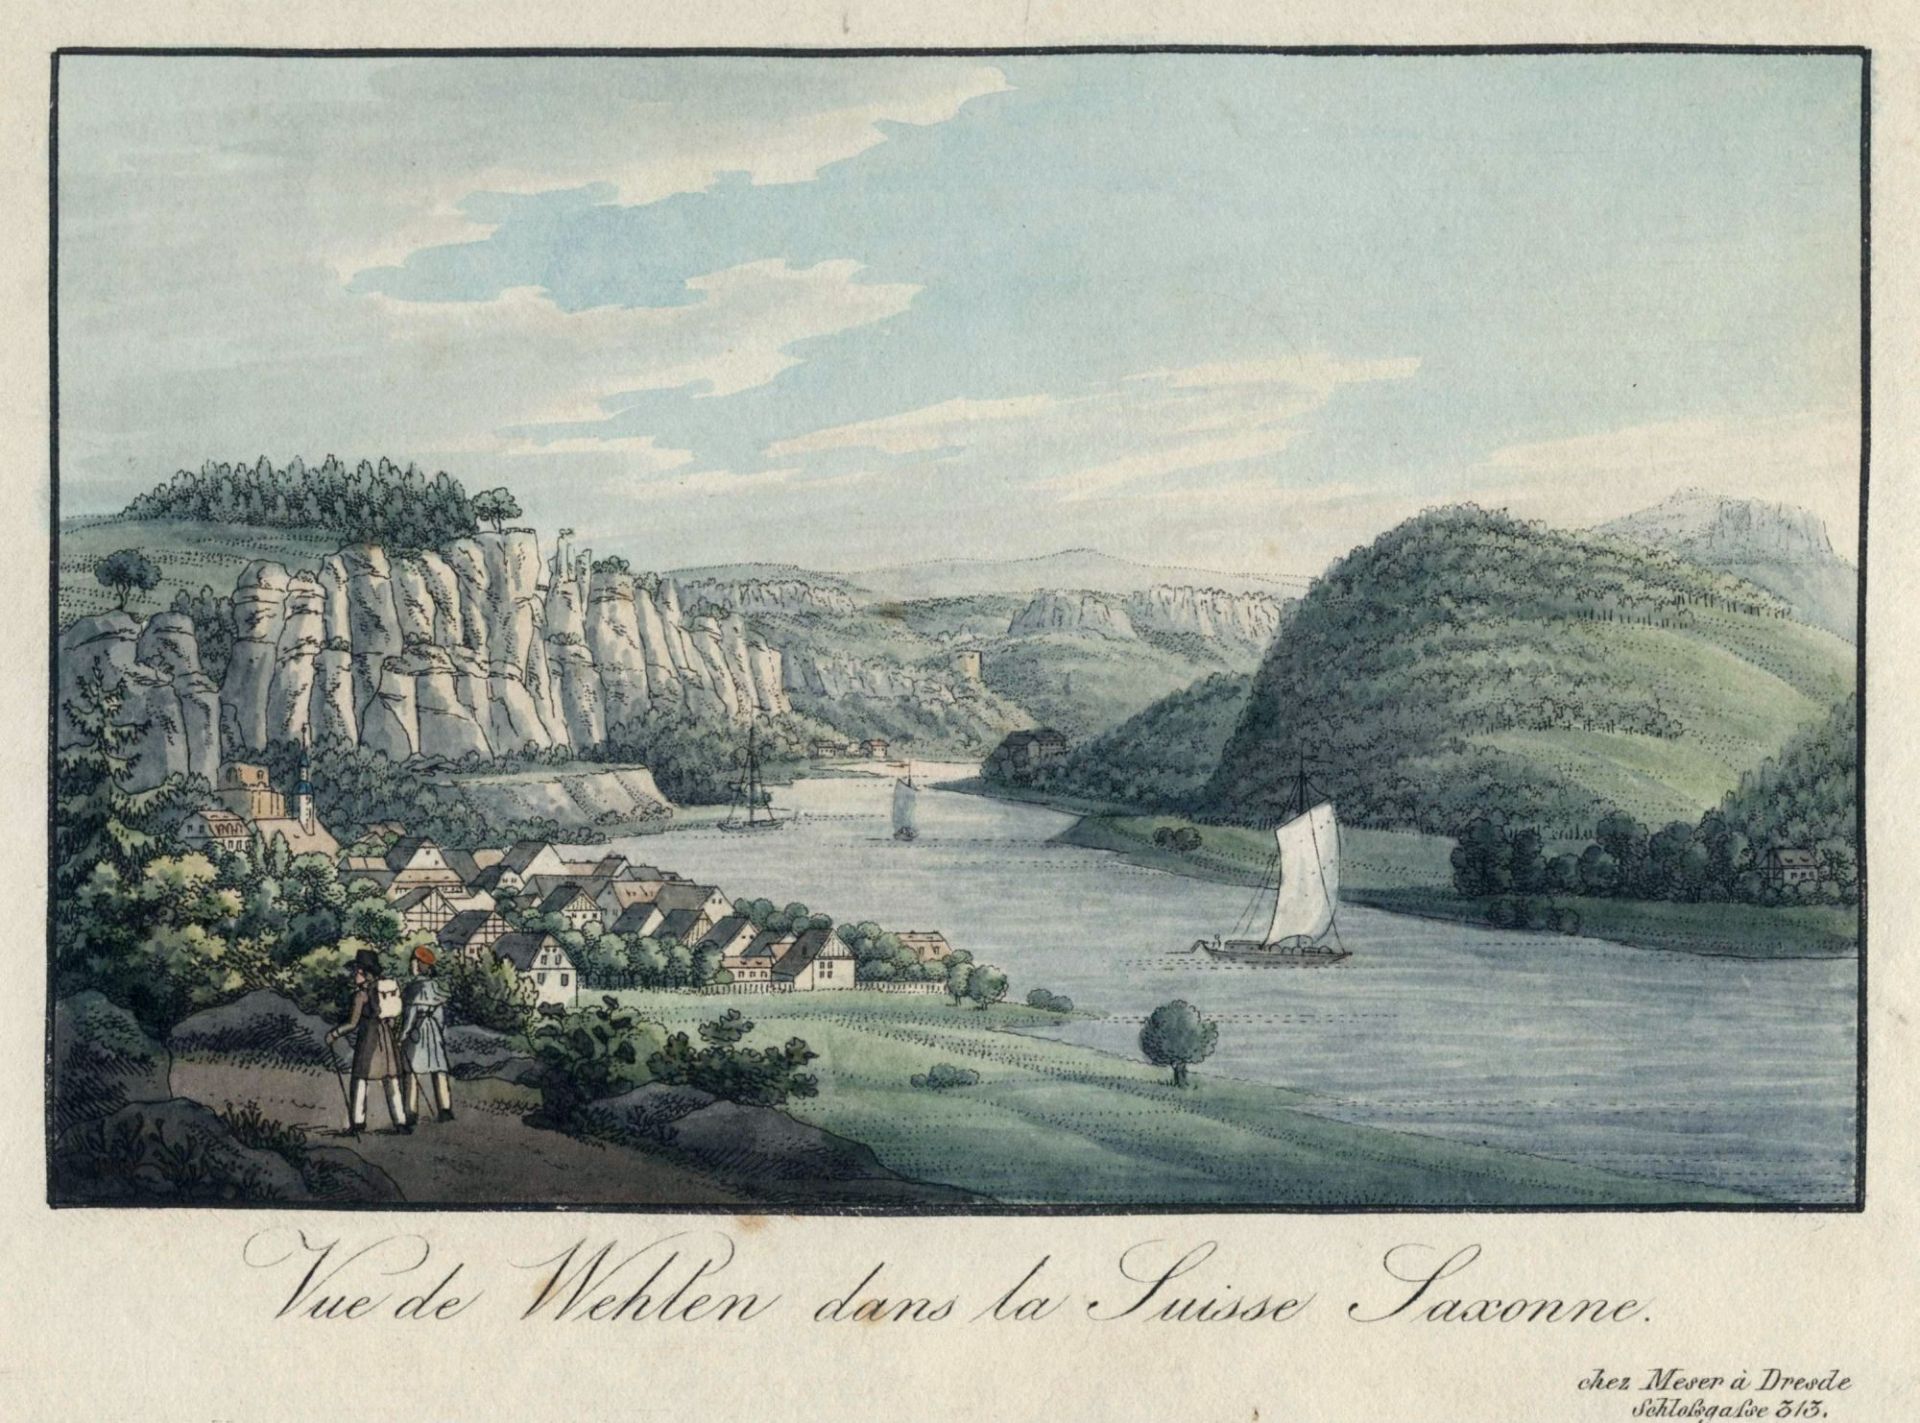 C. F. Meser "Vue de Wehlen dans la Suisse Saxonne". Um 1830.